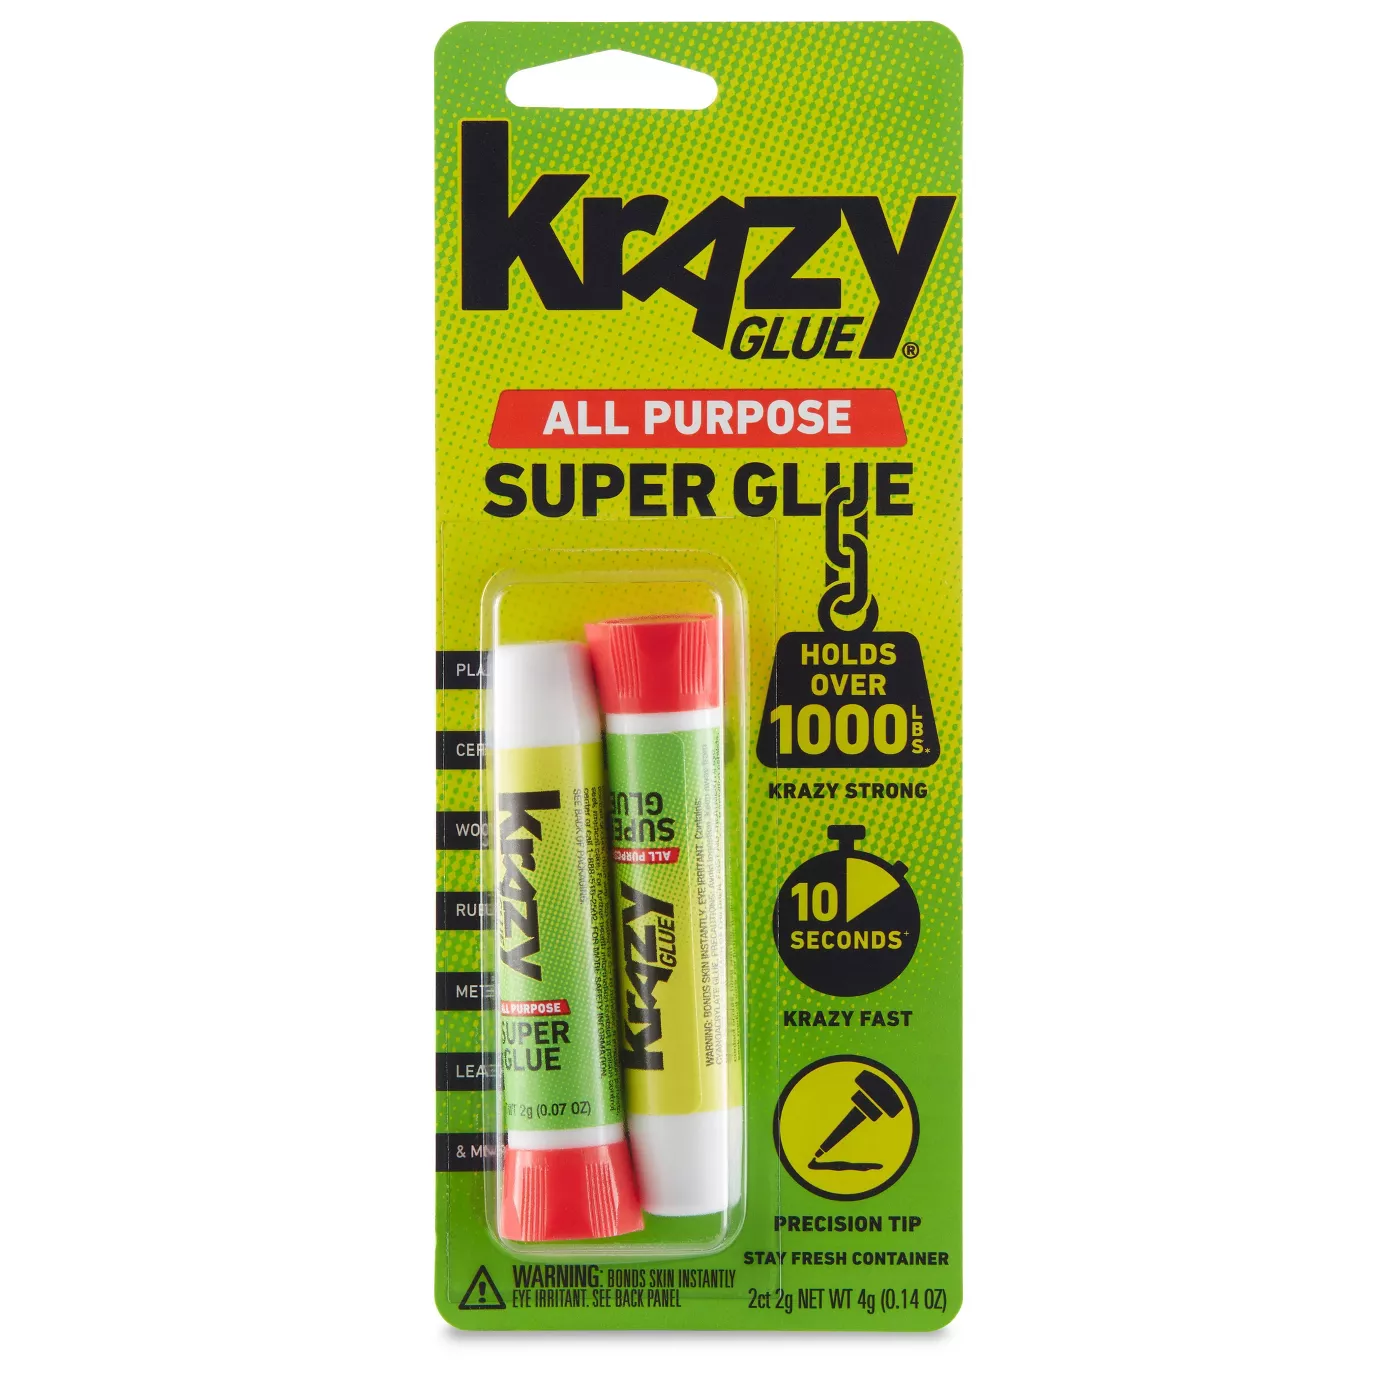 Krazy Glue All Purpose Precision Tip Super Glue 2g - image 1 of 9